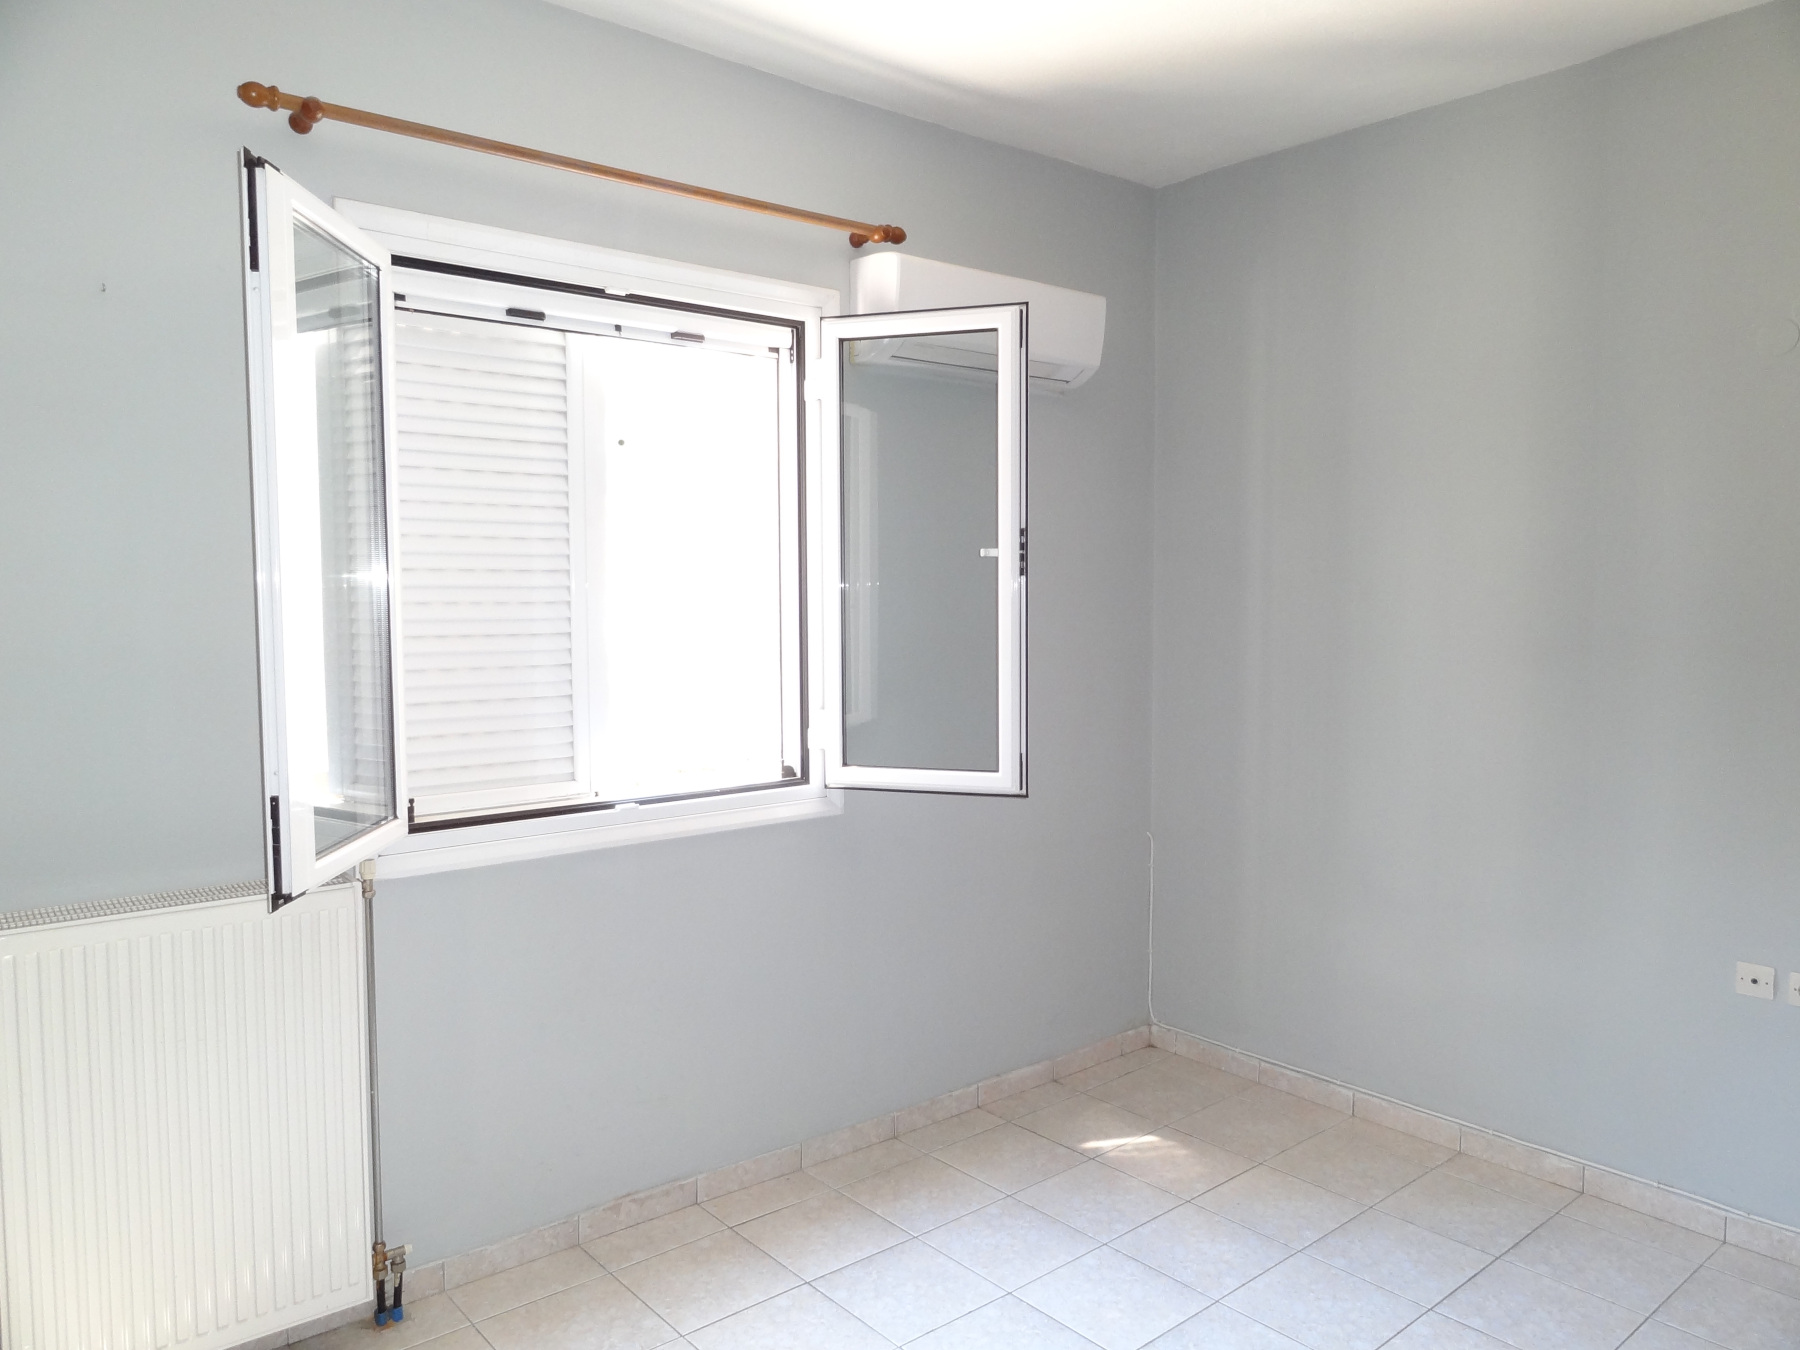 For rent ground floor 1 bedroom apartment, 40 sq.m. in the area of Zevgaria in Ioannina